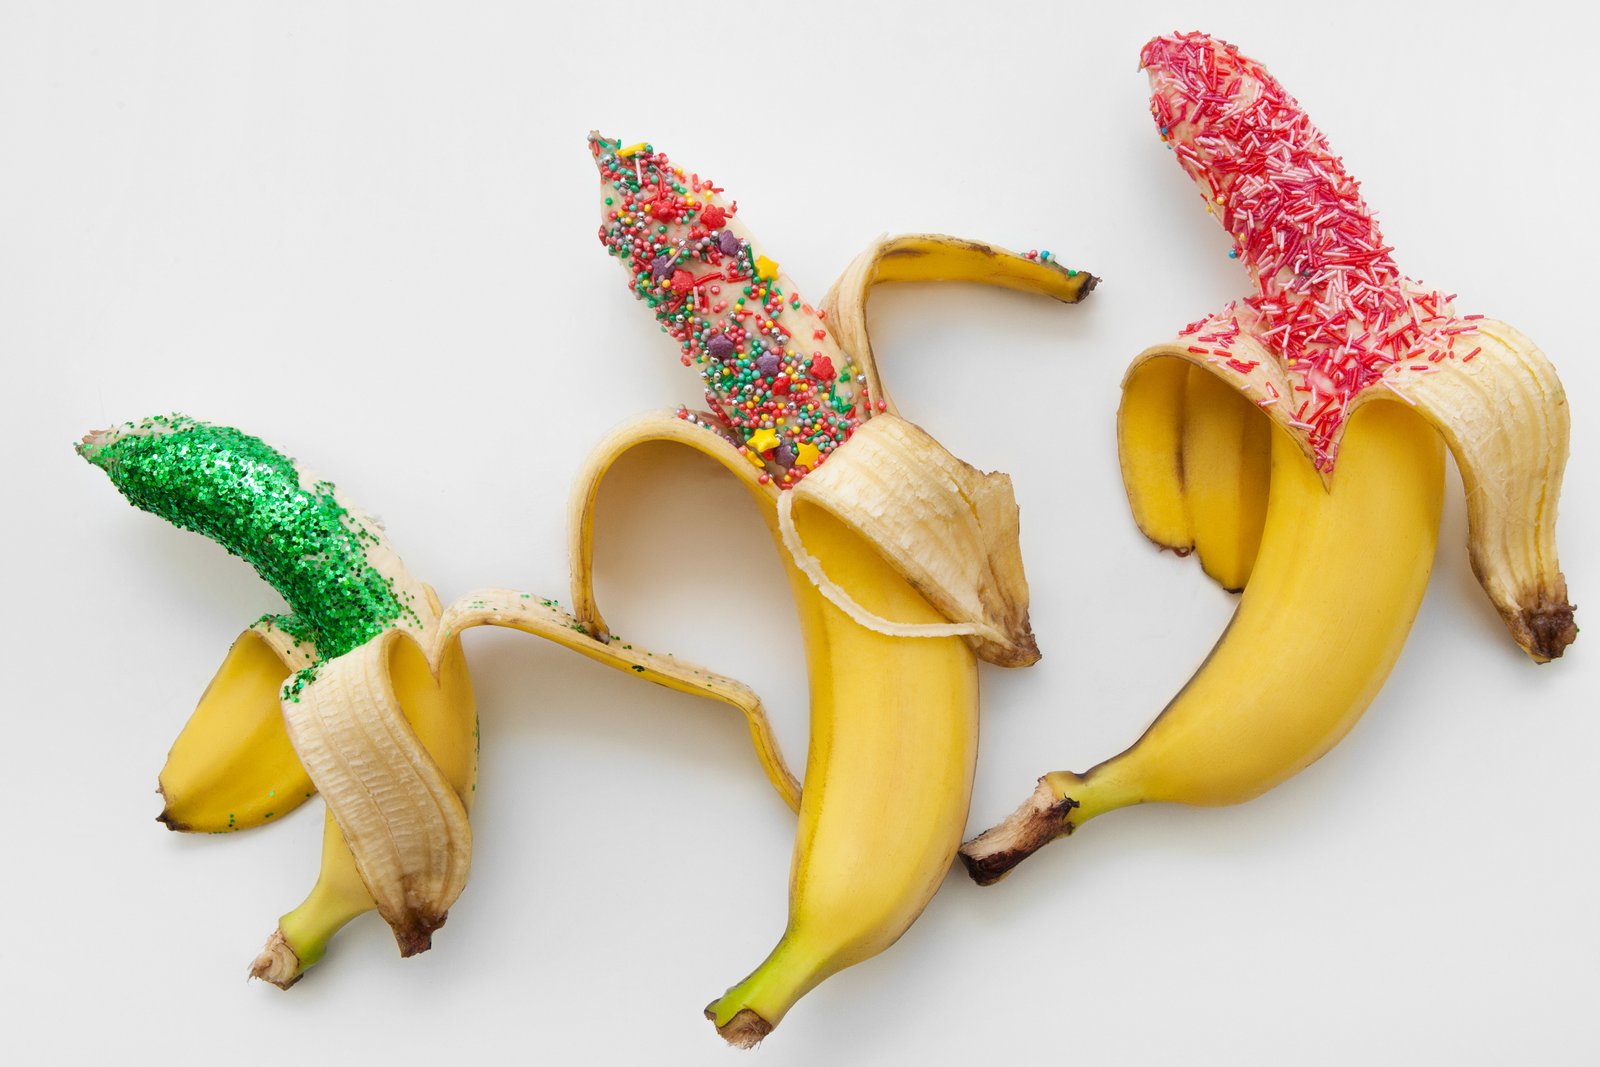 Banány jako symbol pro různé velikosti penisu